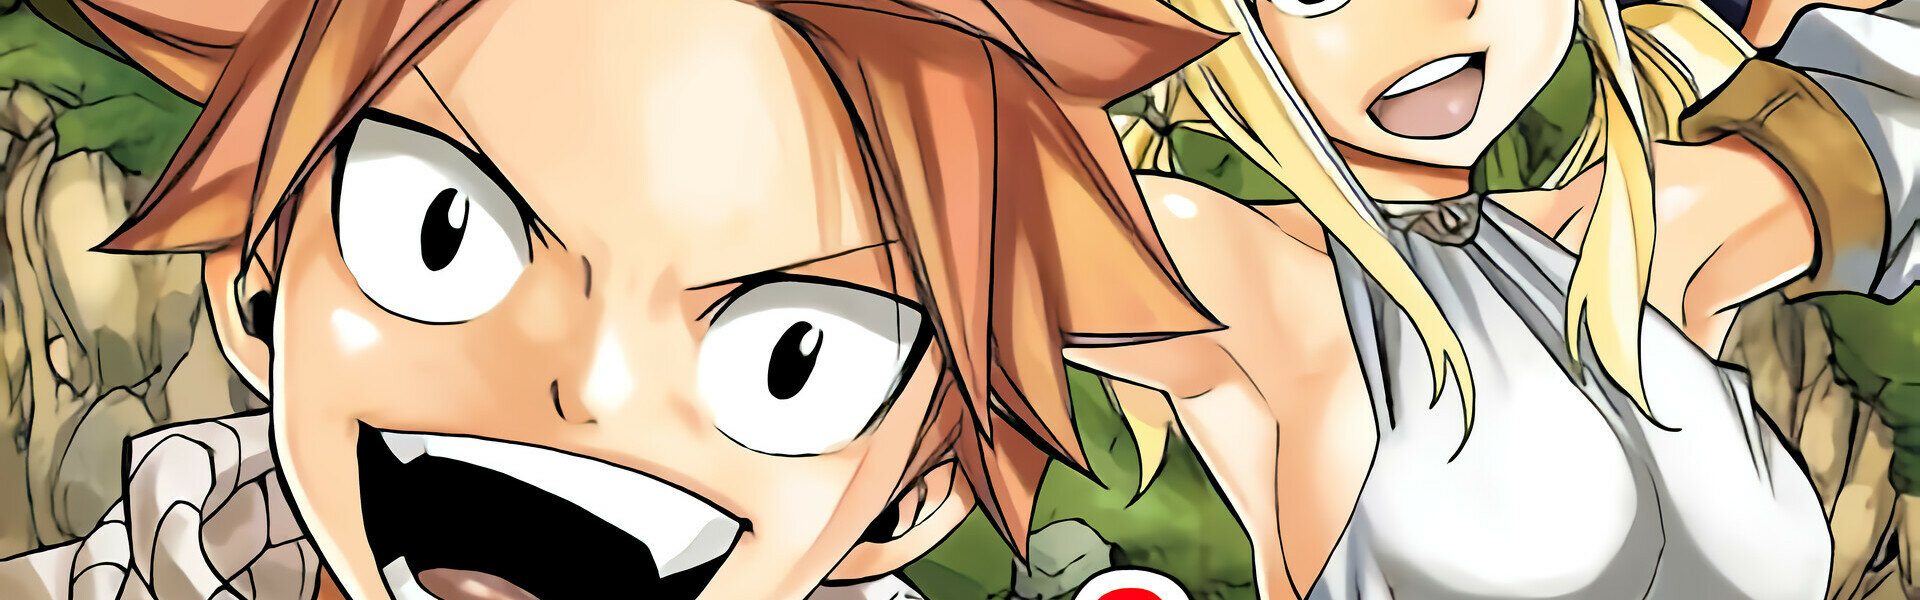 Fairy Tail: Especials manga